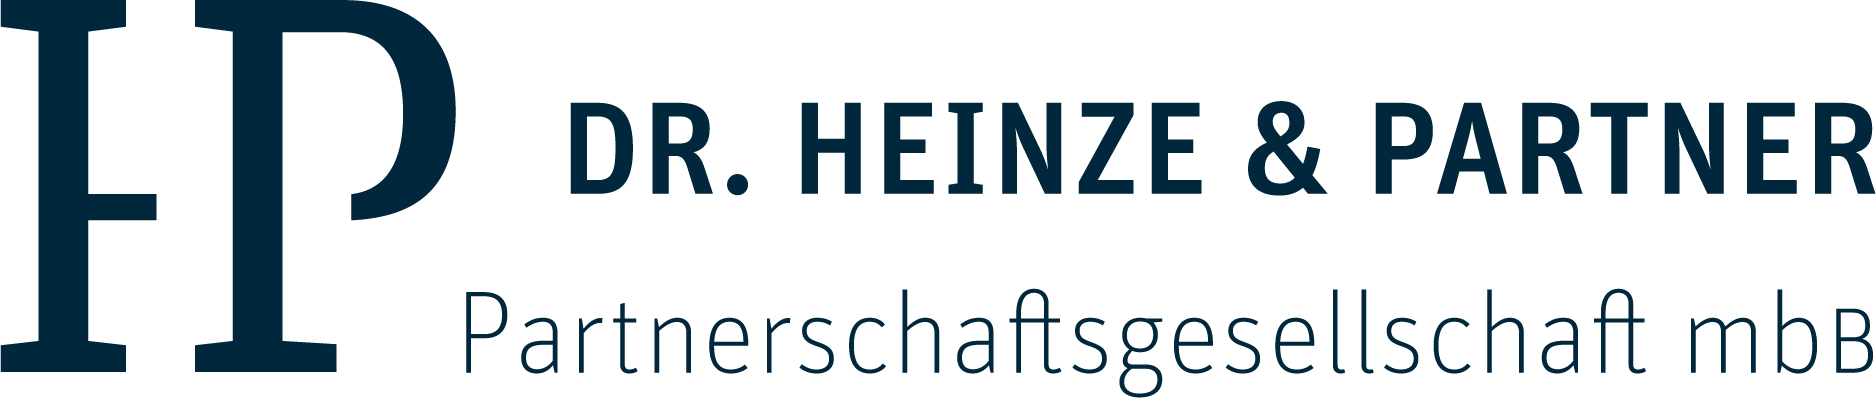 Dr. Heinze & Partner